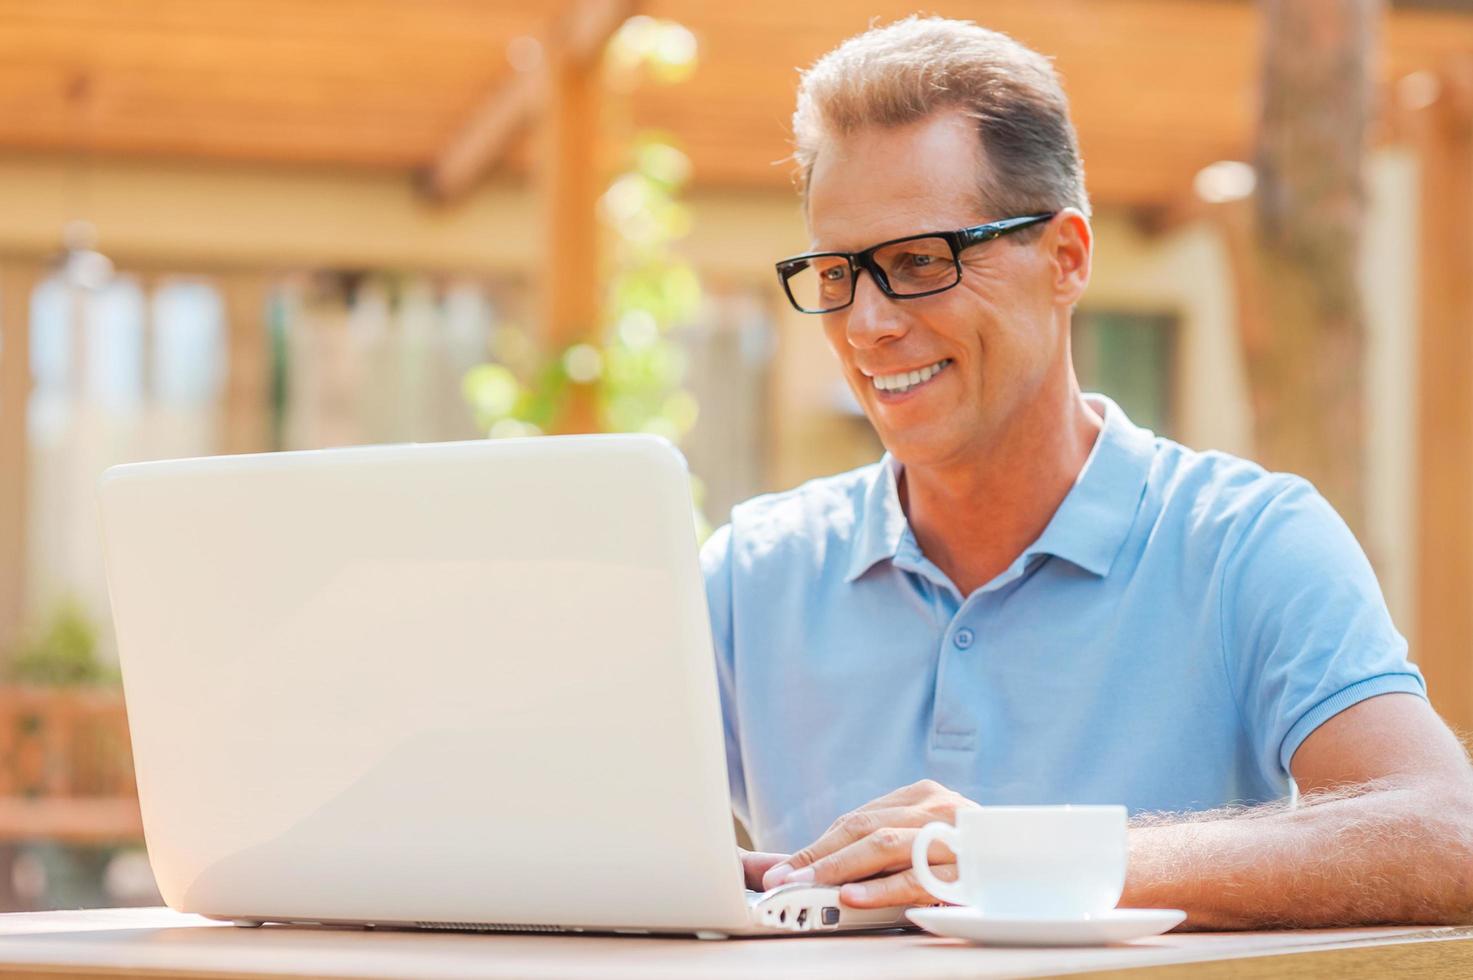 disfrutando de su trabajo al aire libre. hombre maduro alegre que trabaja en la computadora portátil y sonríe mientras se sienta en la mesa al aire libre con la casa en el fondo foto